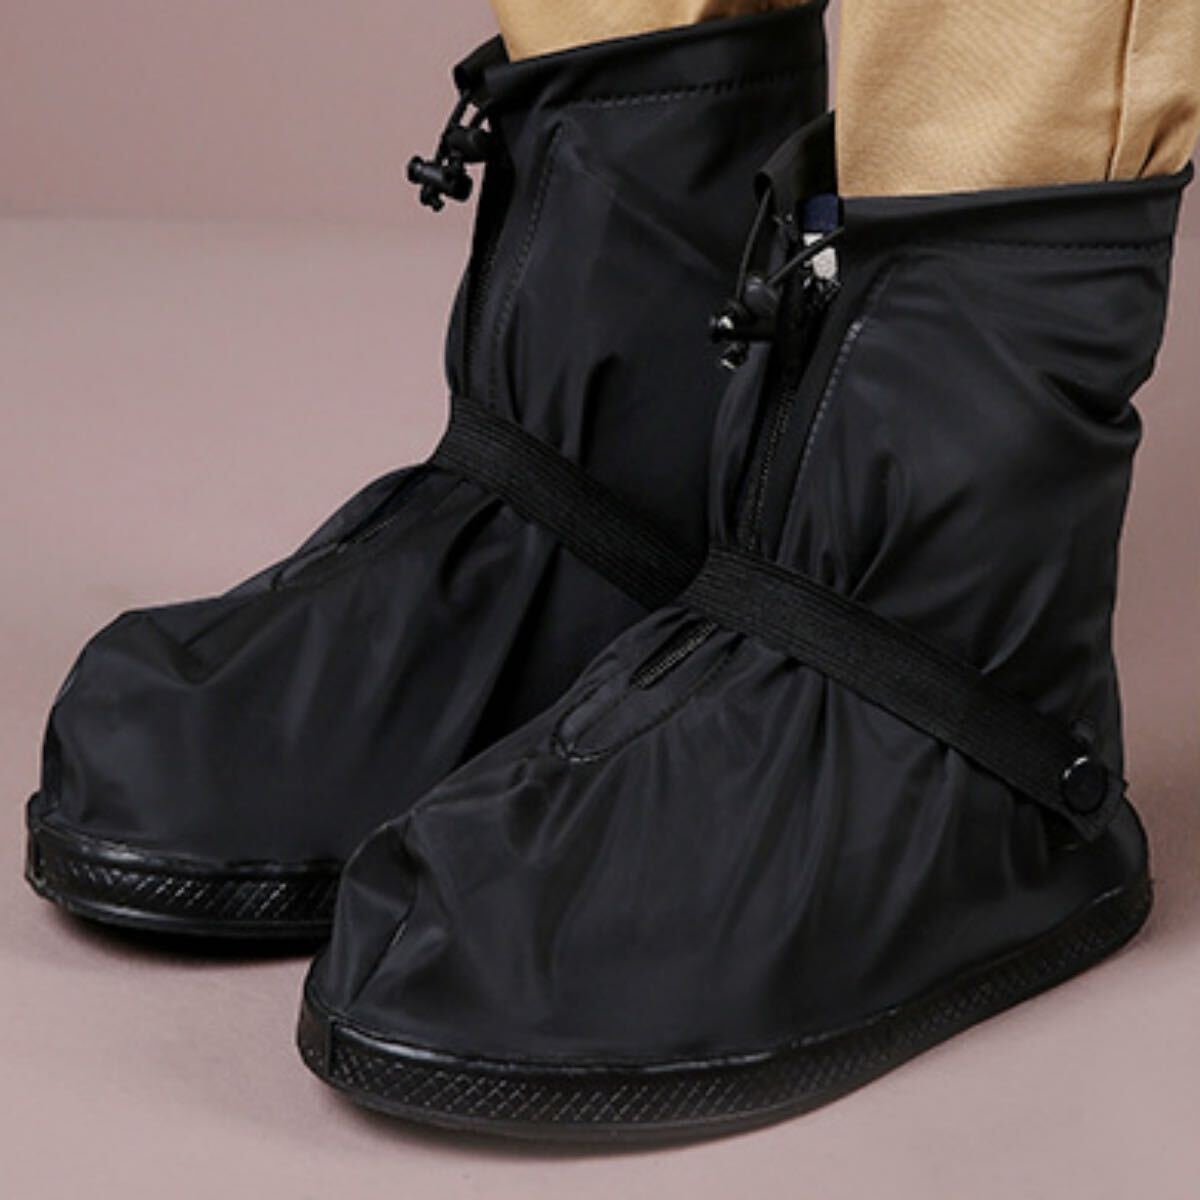  чехлы на обувь дождь для чехлы на обувь резиновые сапоги покрытие обувь покрытие резиновые сапоги женский водонепроницаемый обувь обувь покрытие дождевик 